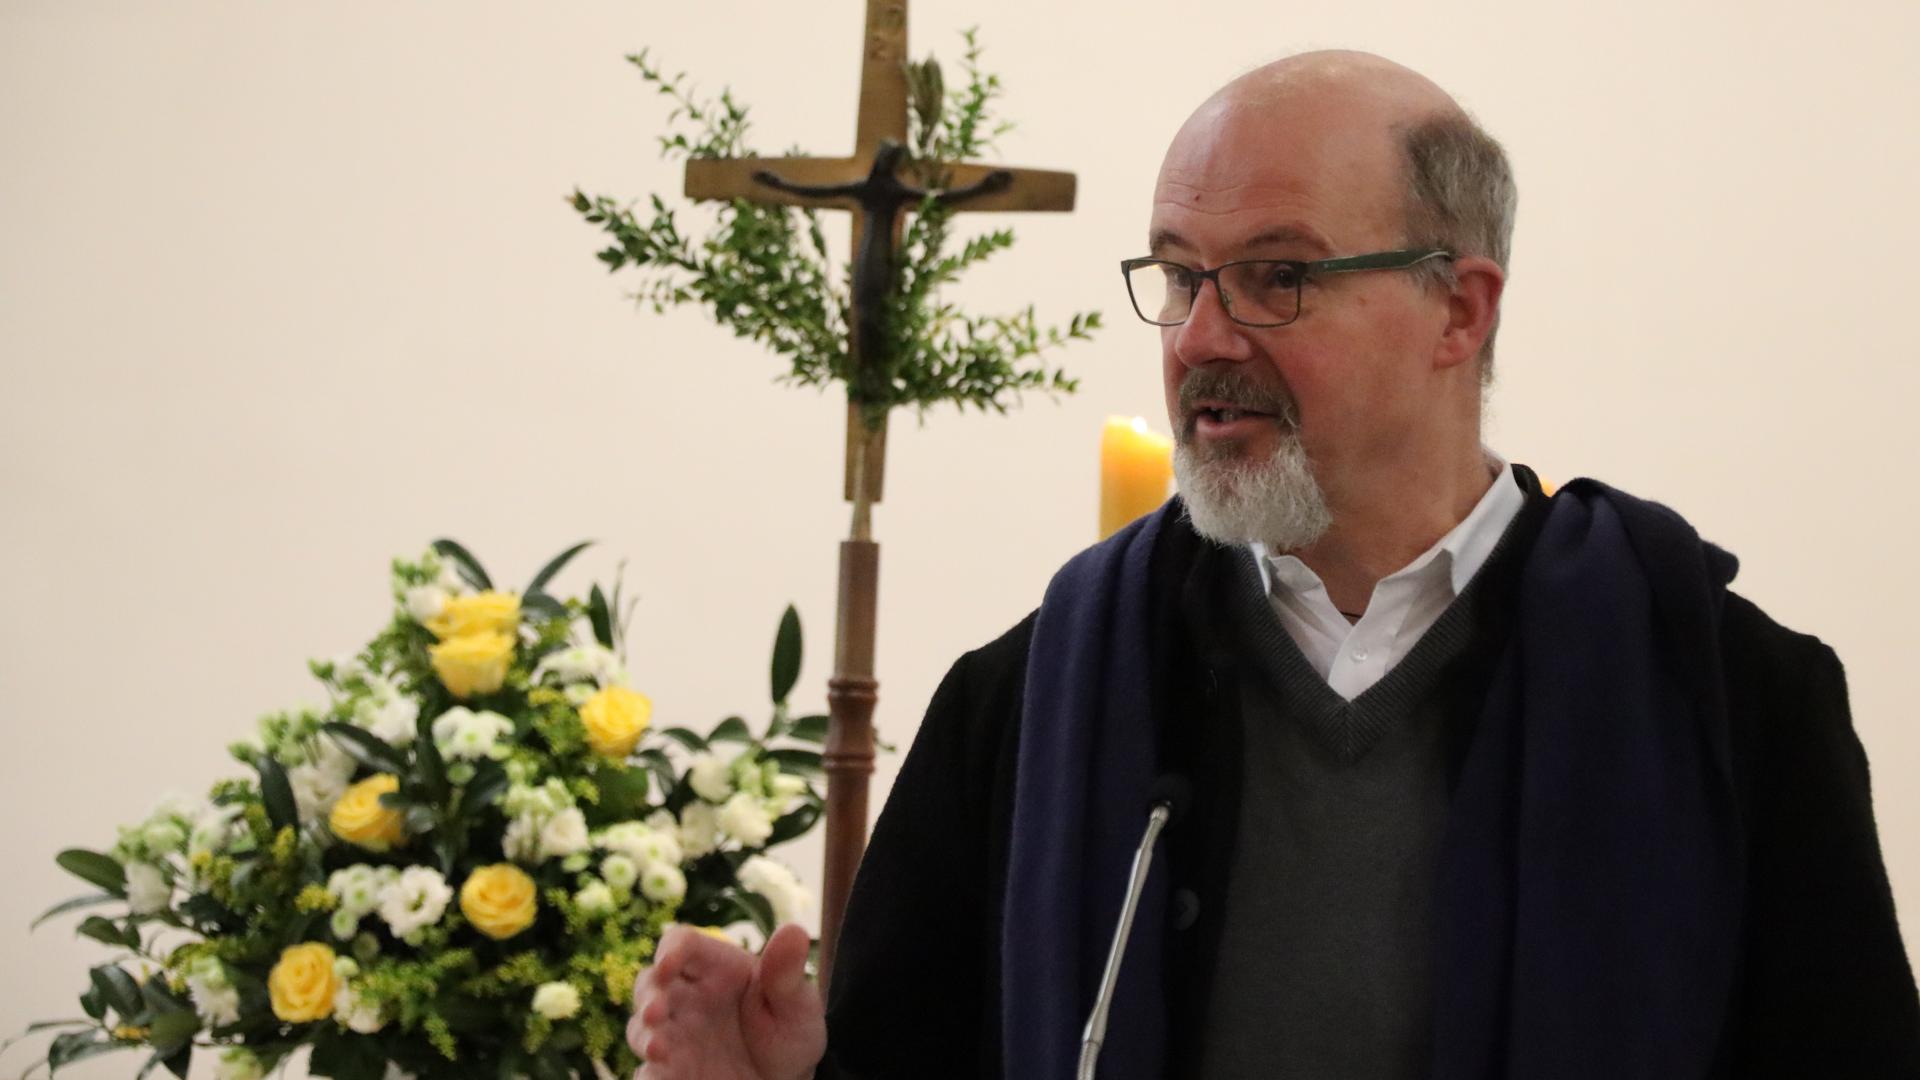 Ein Mann hält einen Vortrag, im Hintergrund sind ein Kreuz und Blumen